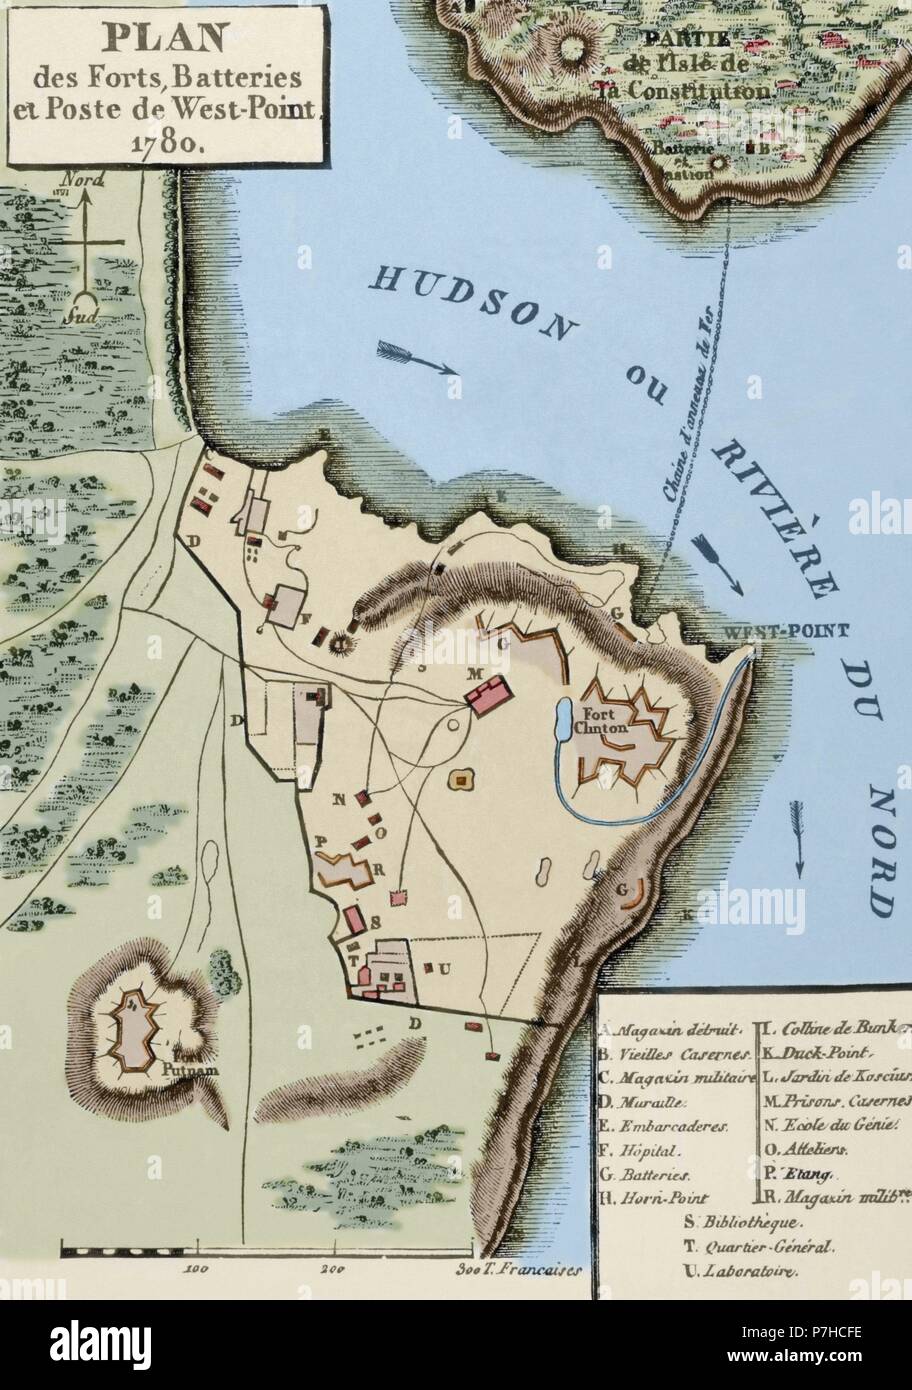 Amerikanischer Unabhängigkeitskrieg (1775-1783). Karte von das Defense Network in West Point, einschließlich der großen Kette, Verfassung Insel Fort Clinton und Fort Putnam, 1780. Gravur. Farbige. Stockfoto